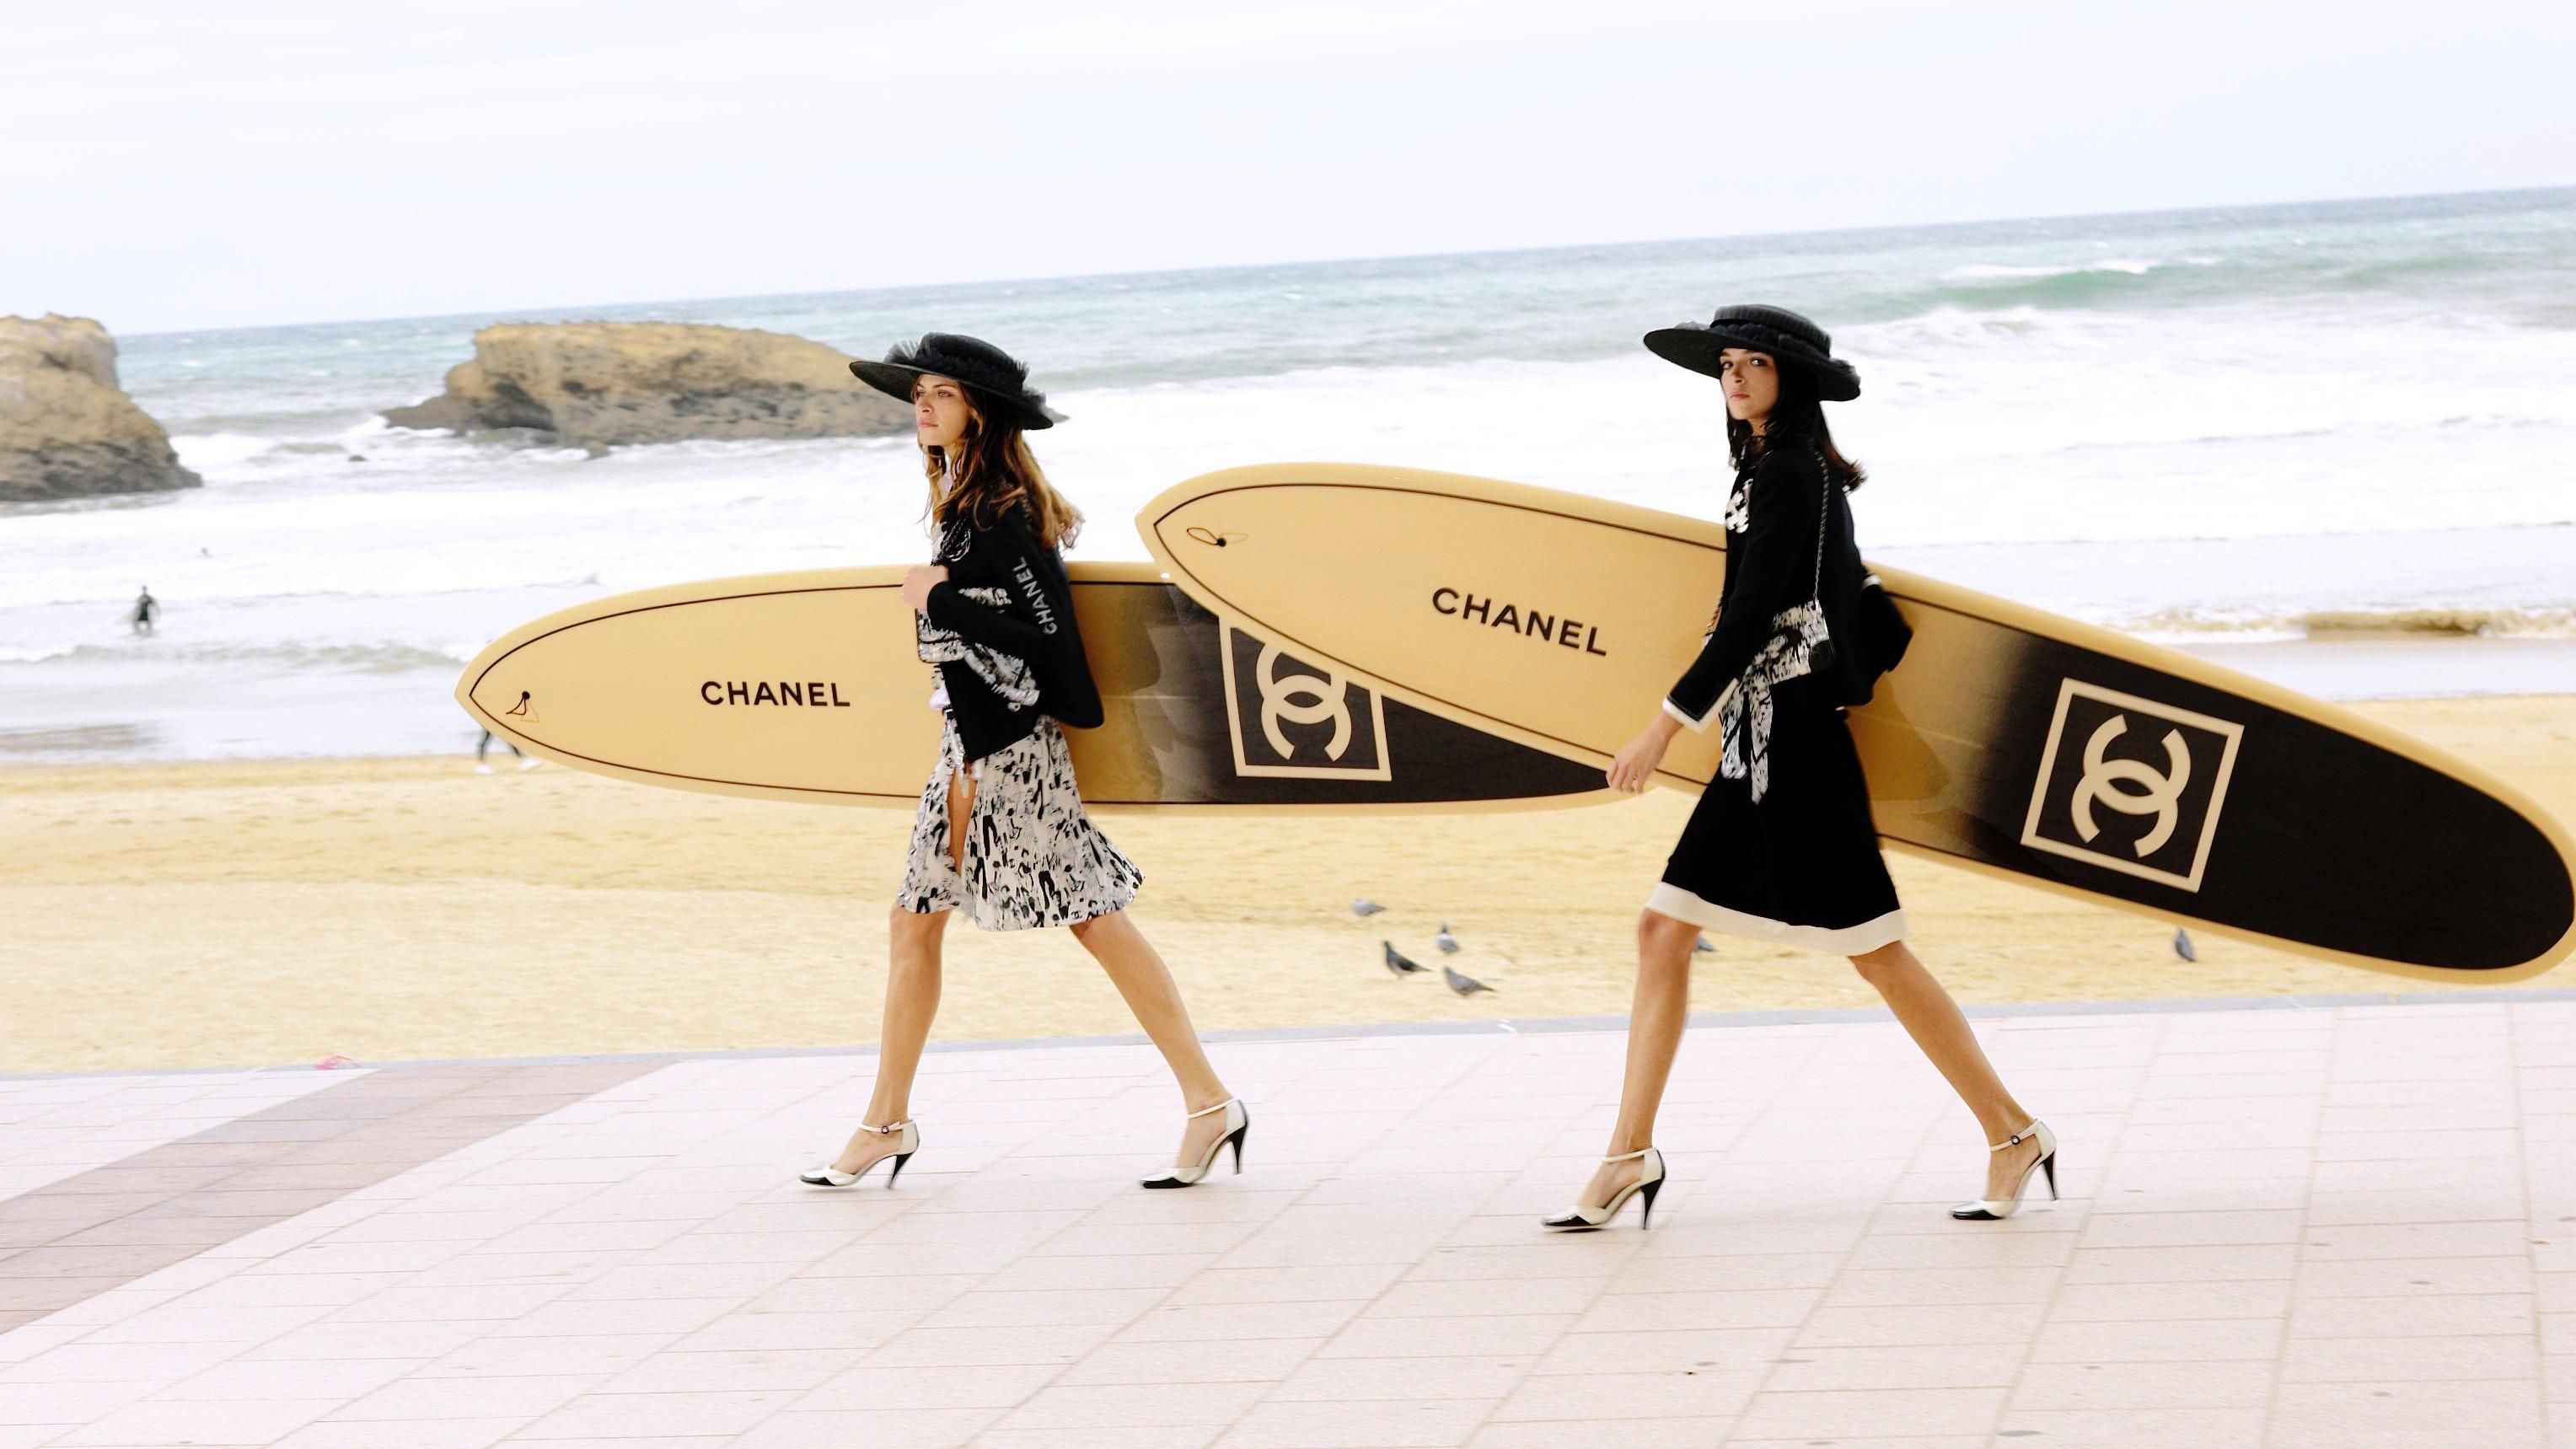 Представники Chanel закликали журналістів не порівнювати інші марки з модним будинком: деталі